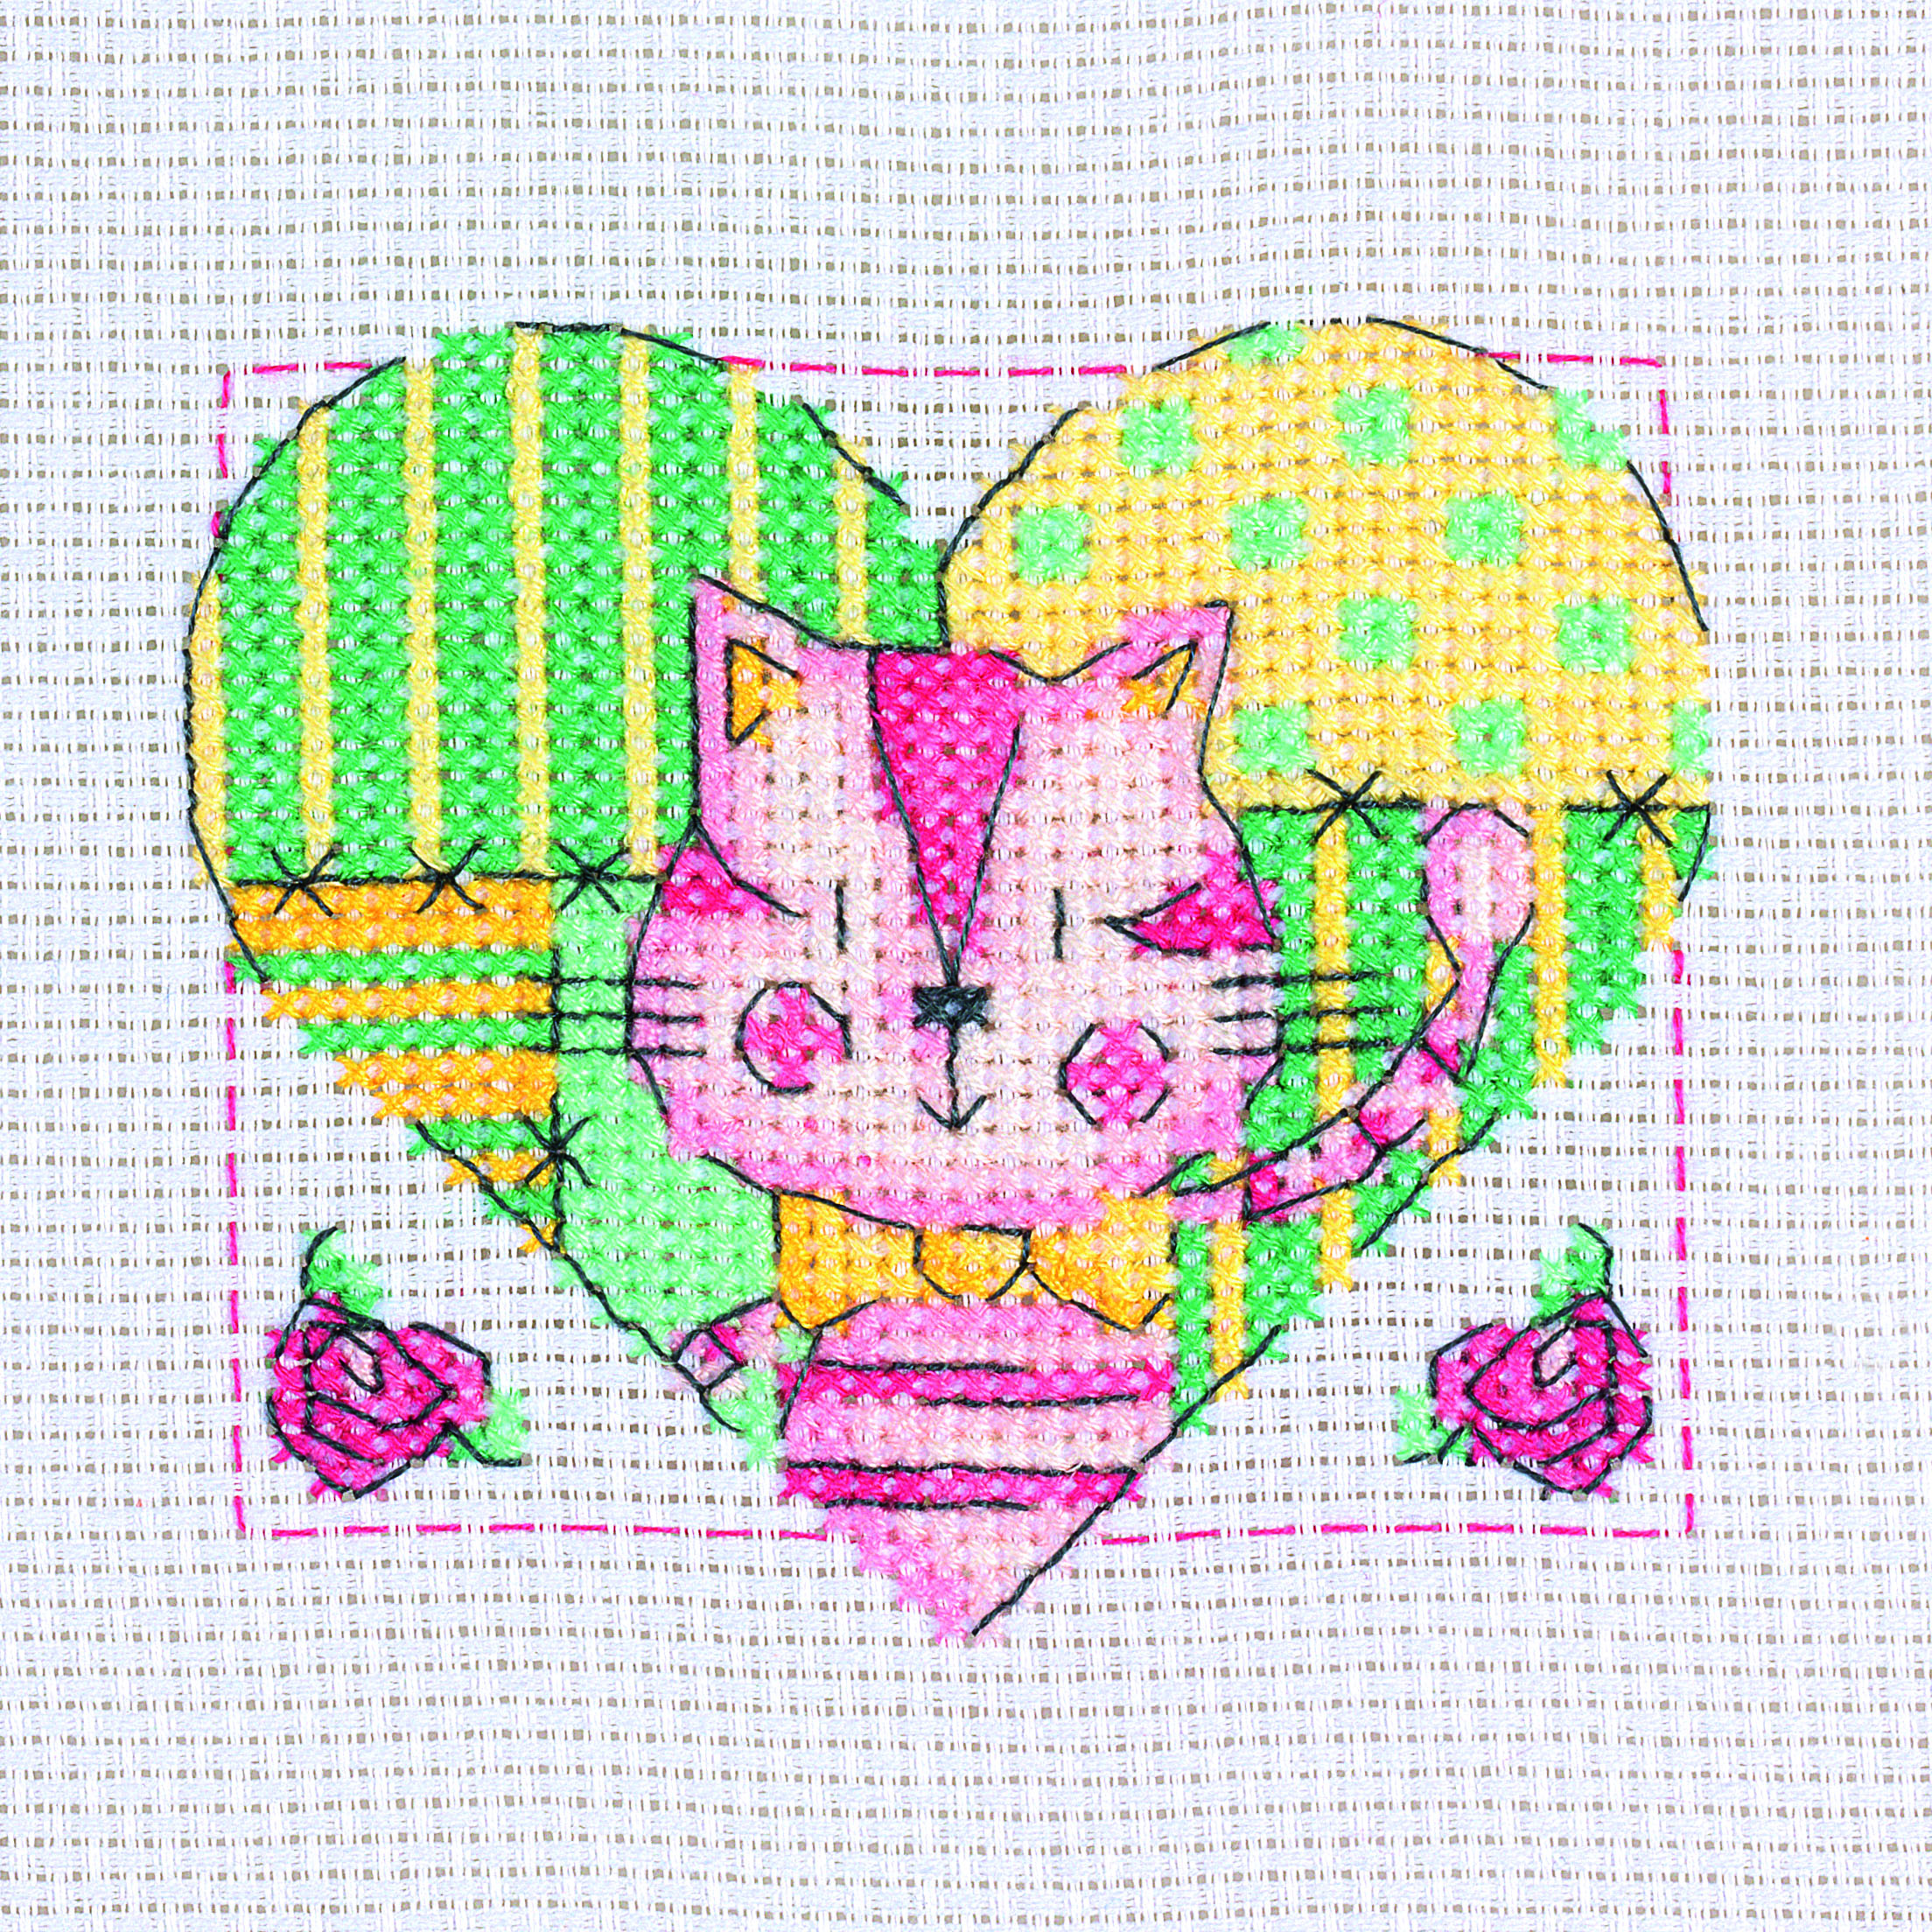 Cat in Heart